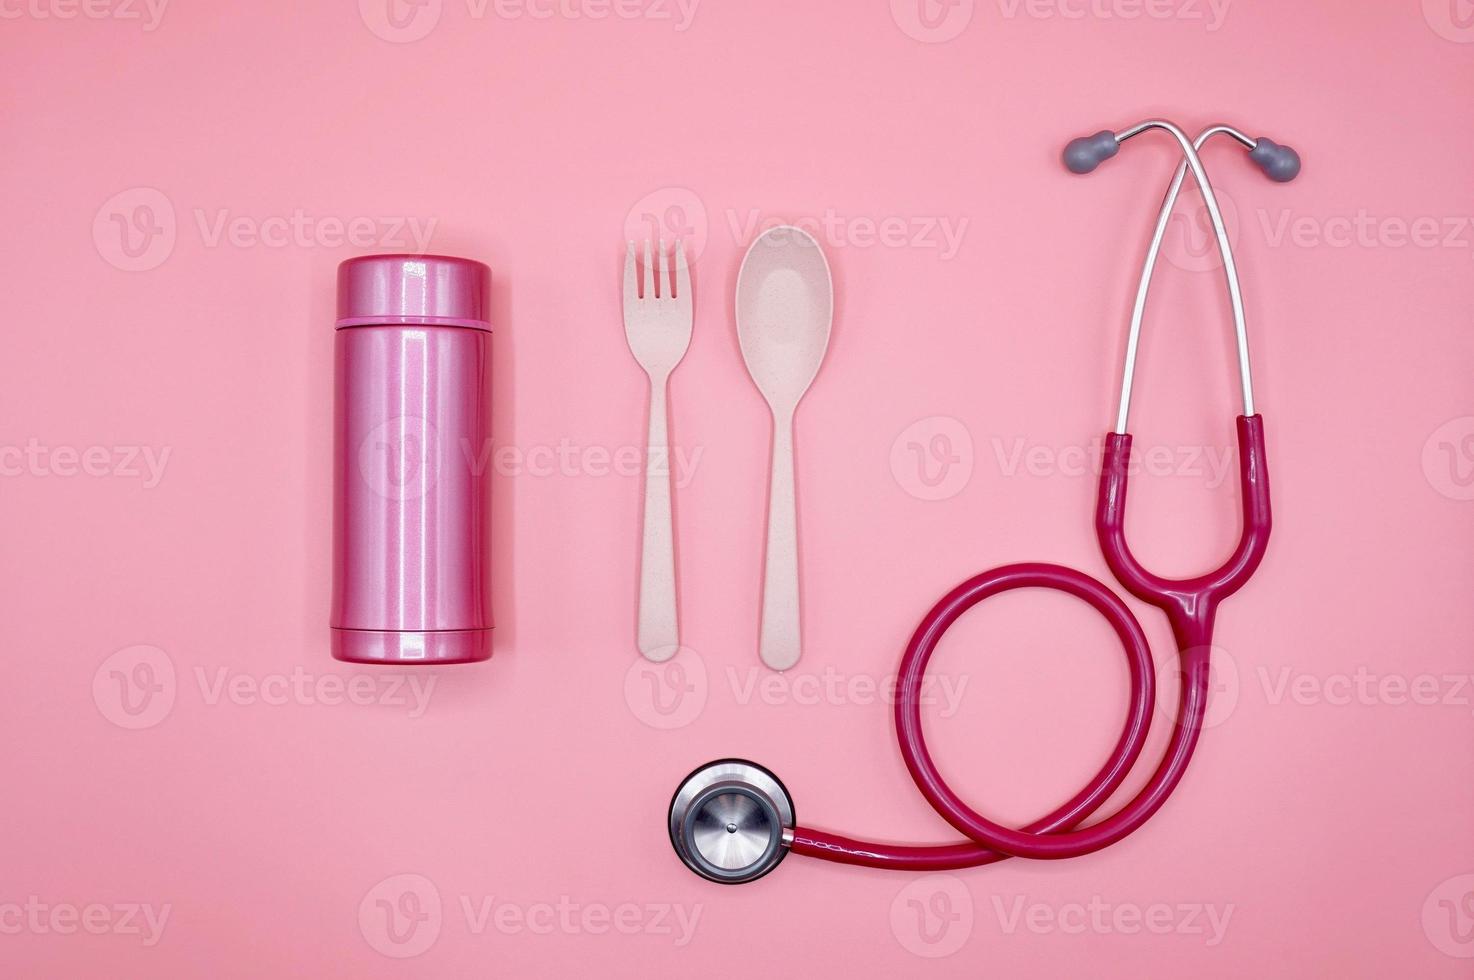 ett rosa stetoskop, sked, gaffel och termosflaska på den rosa bakgrunden, platt layout foto